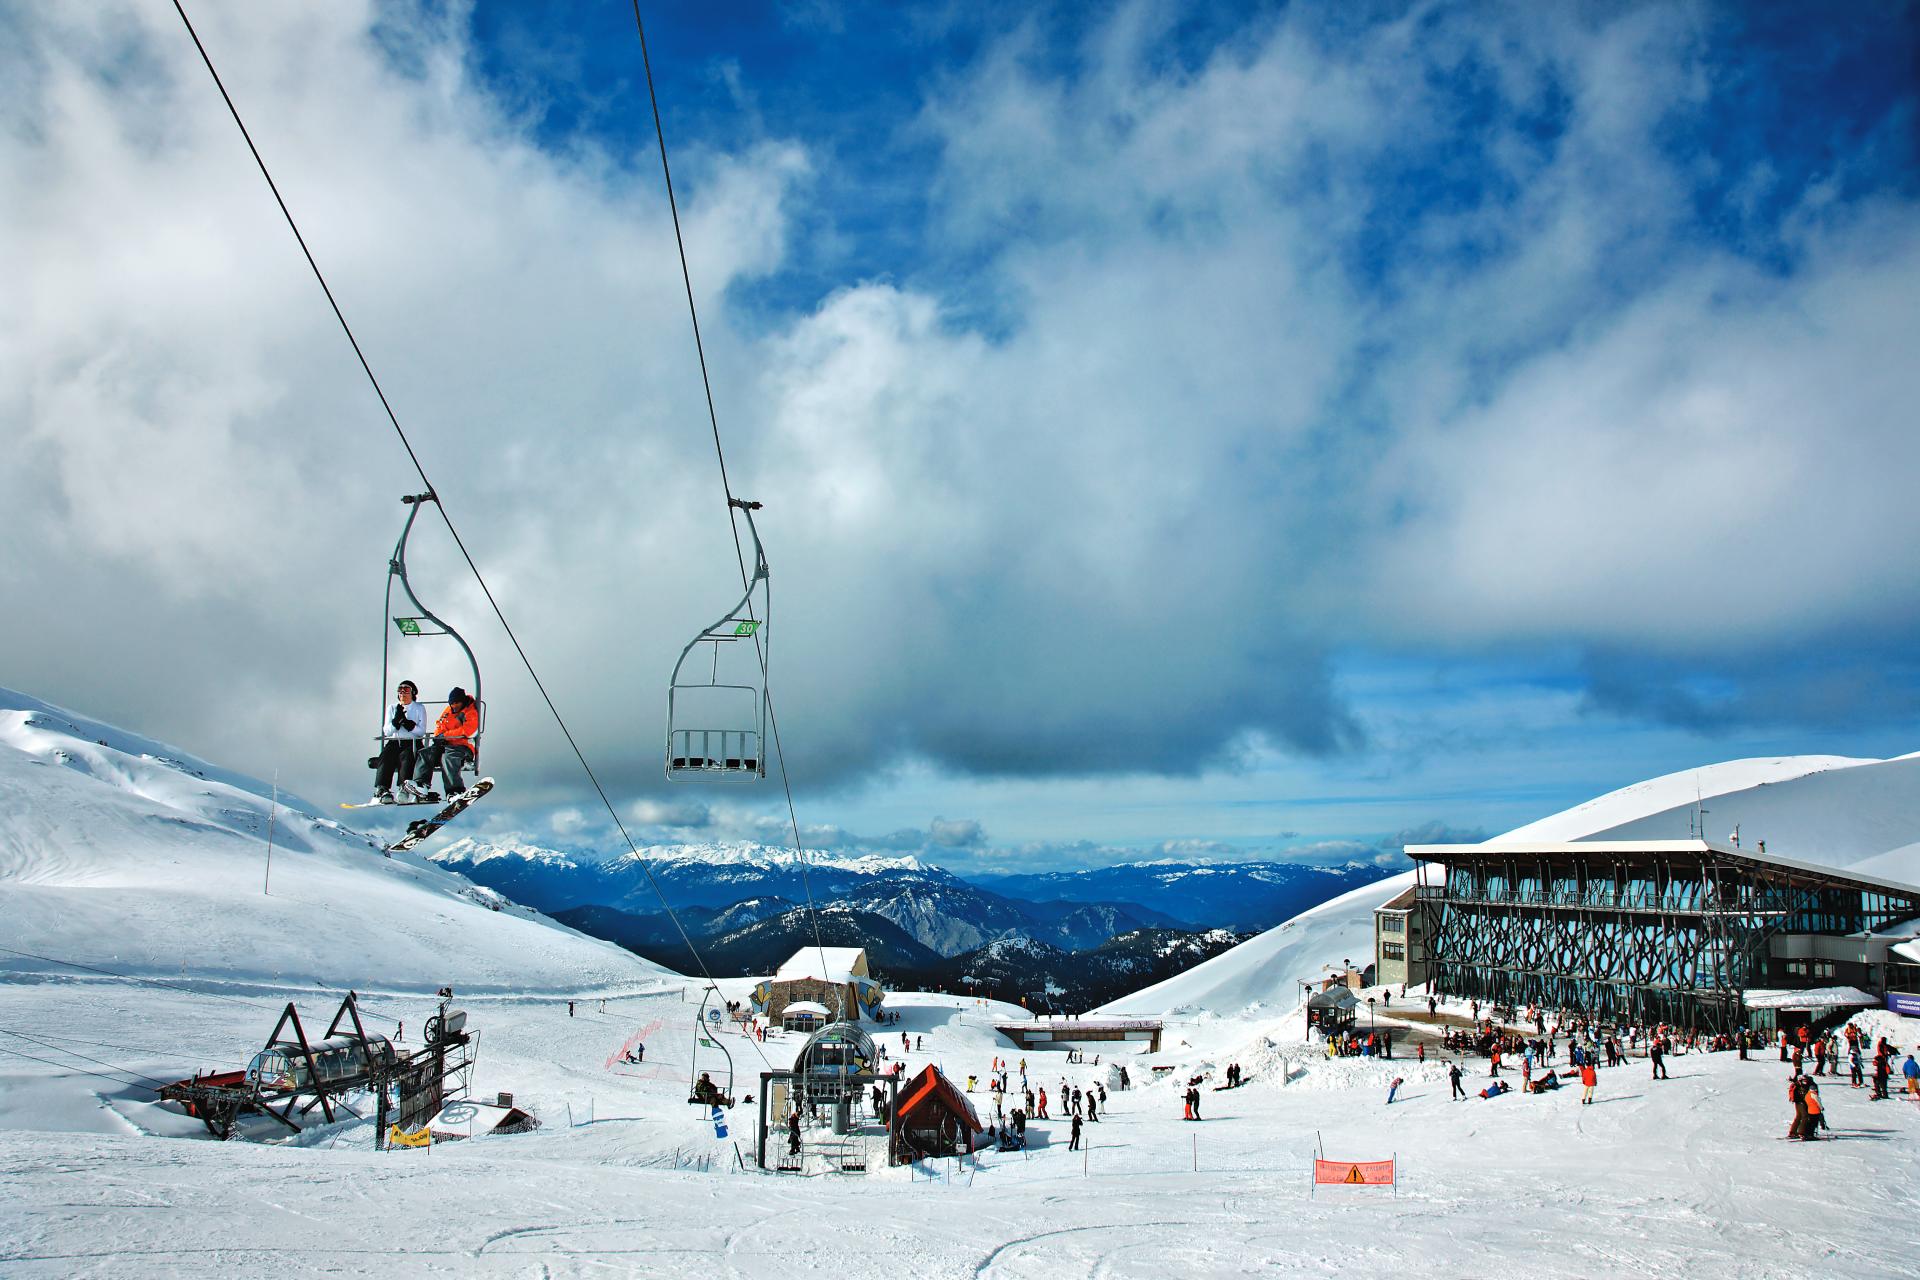 Σκι στο βουνό: Οι δημοφιλέστεροι χειμερινοί προορισμοί στην Ελλάδα